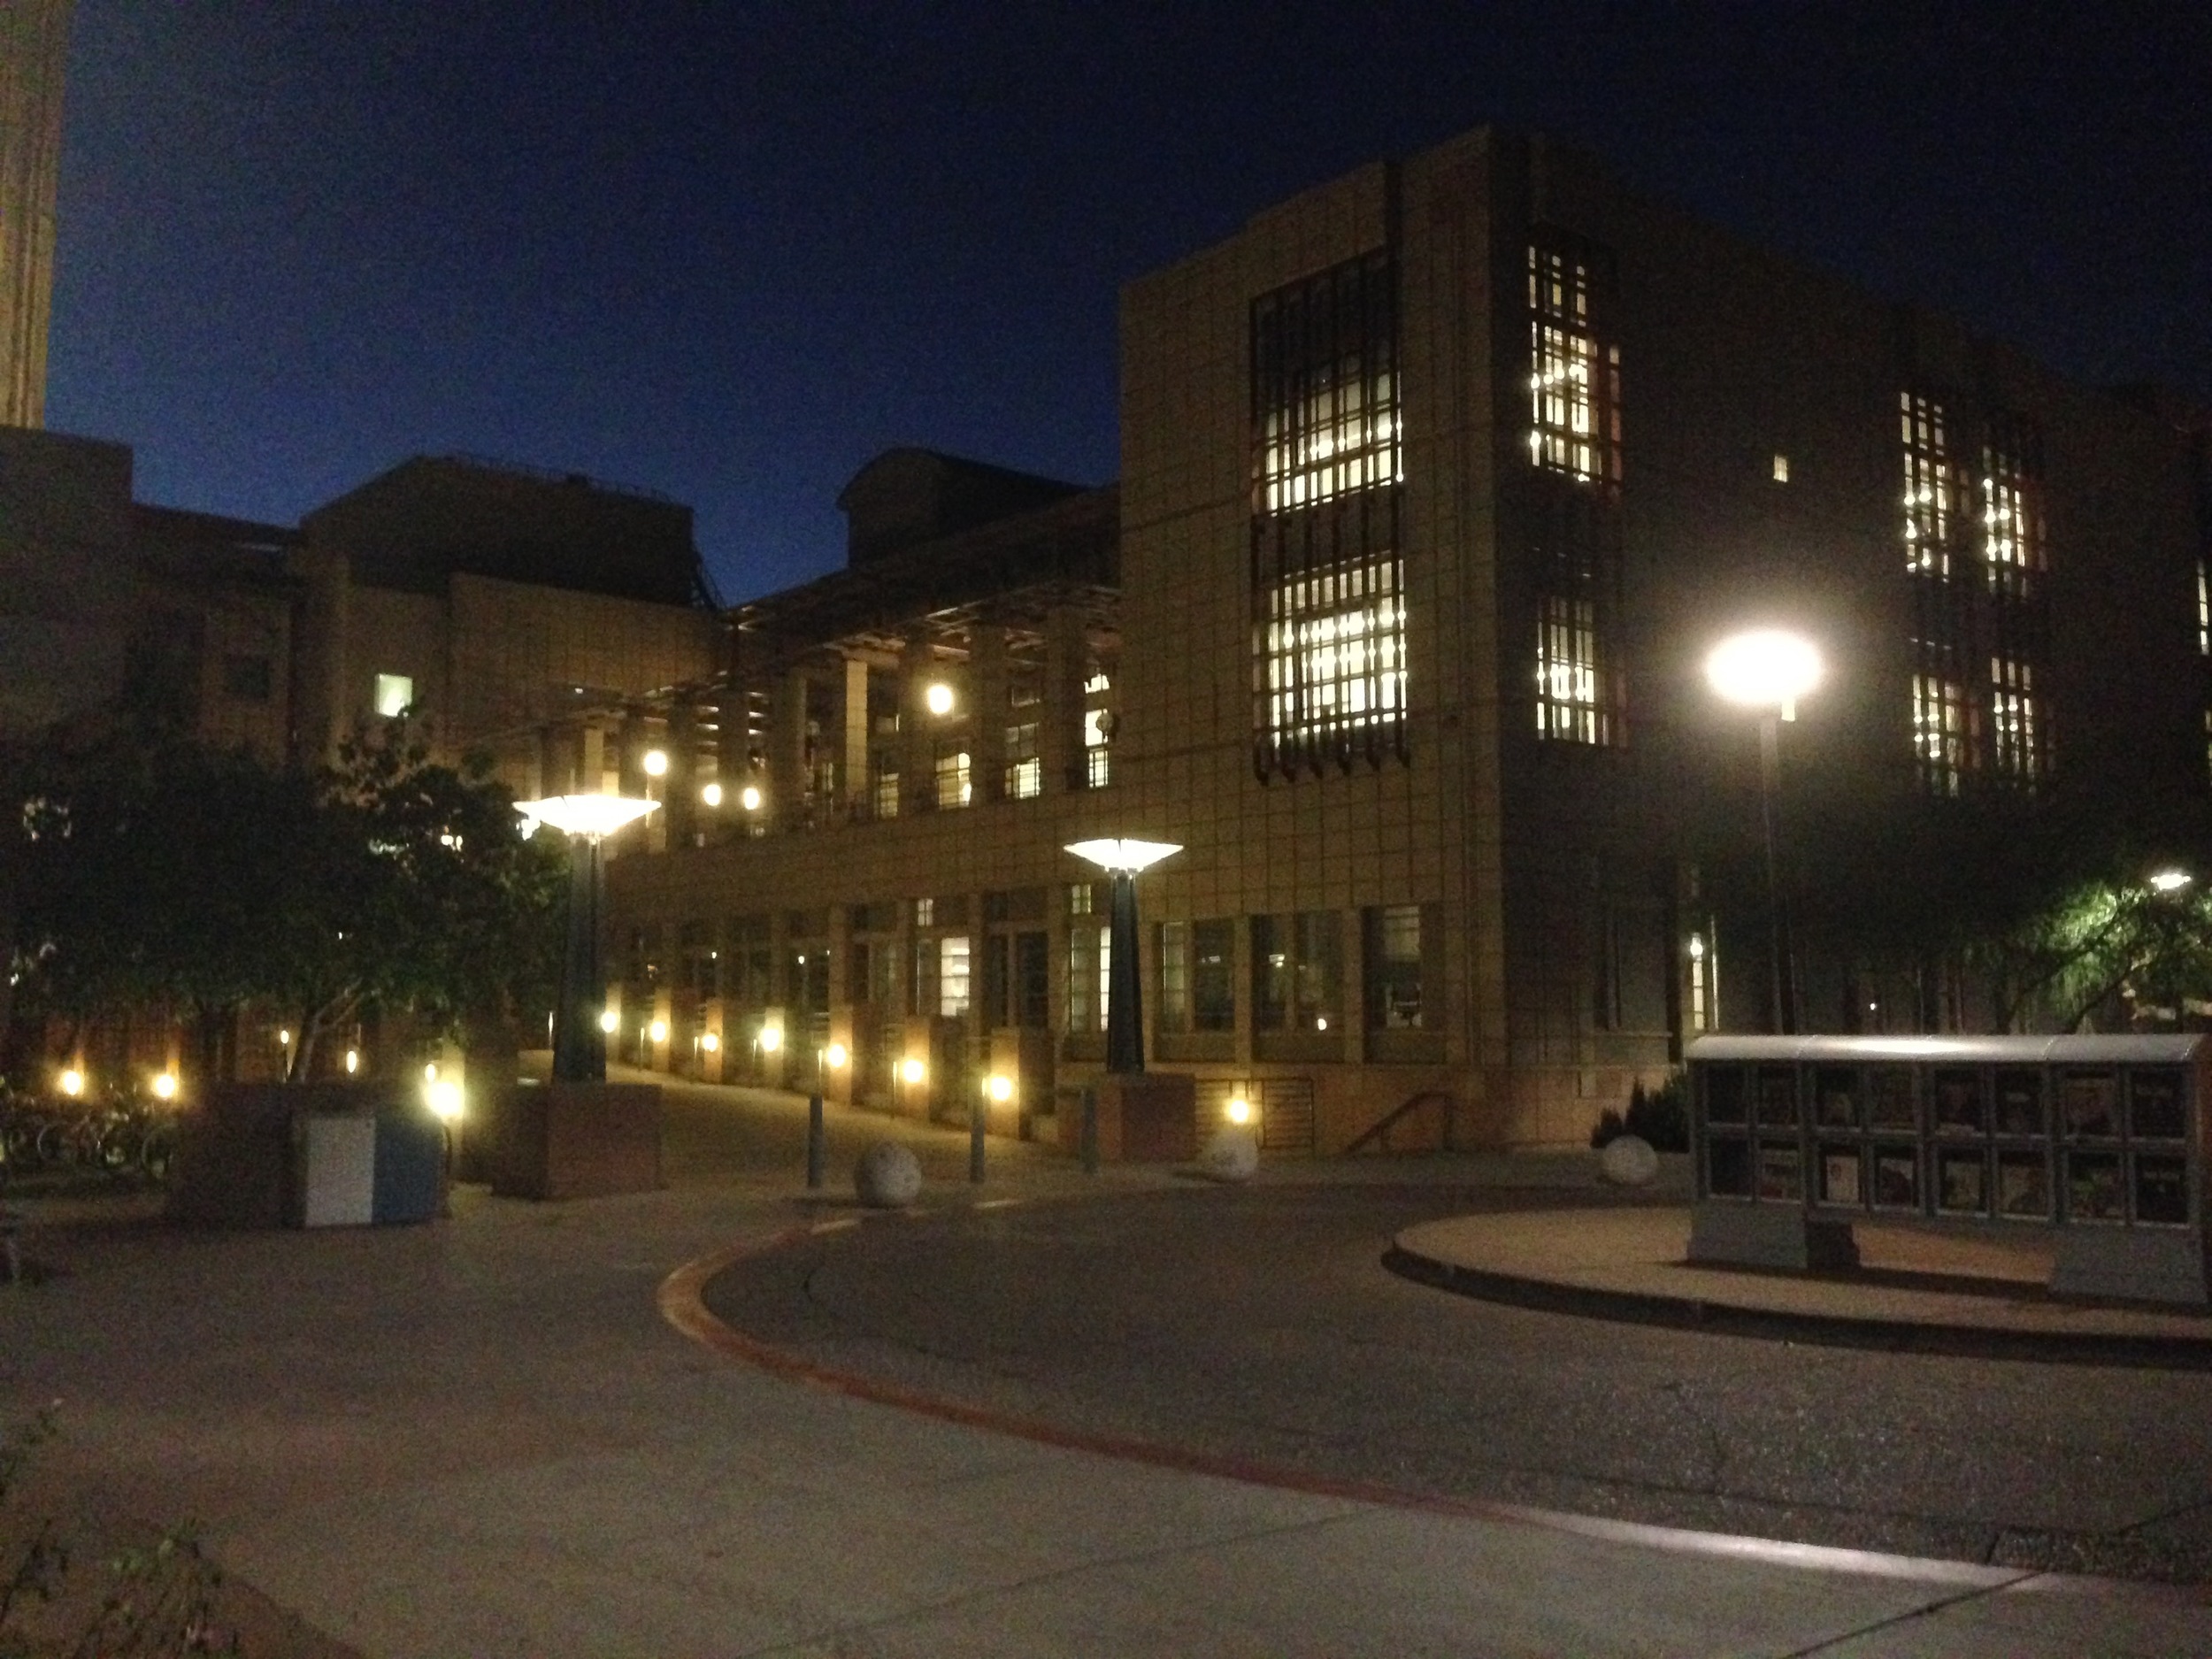  The beautiful Design building at ASU 